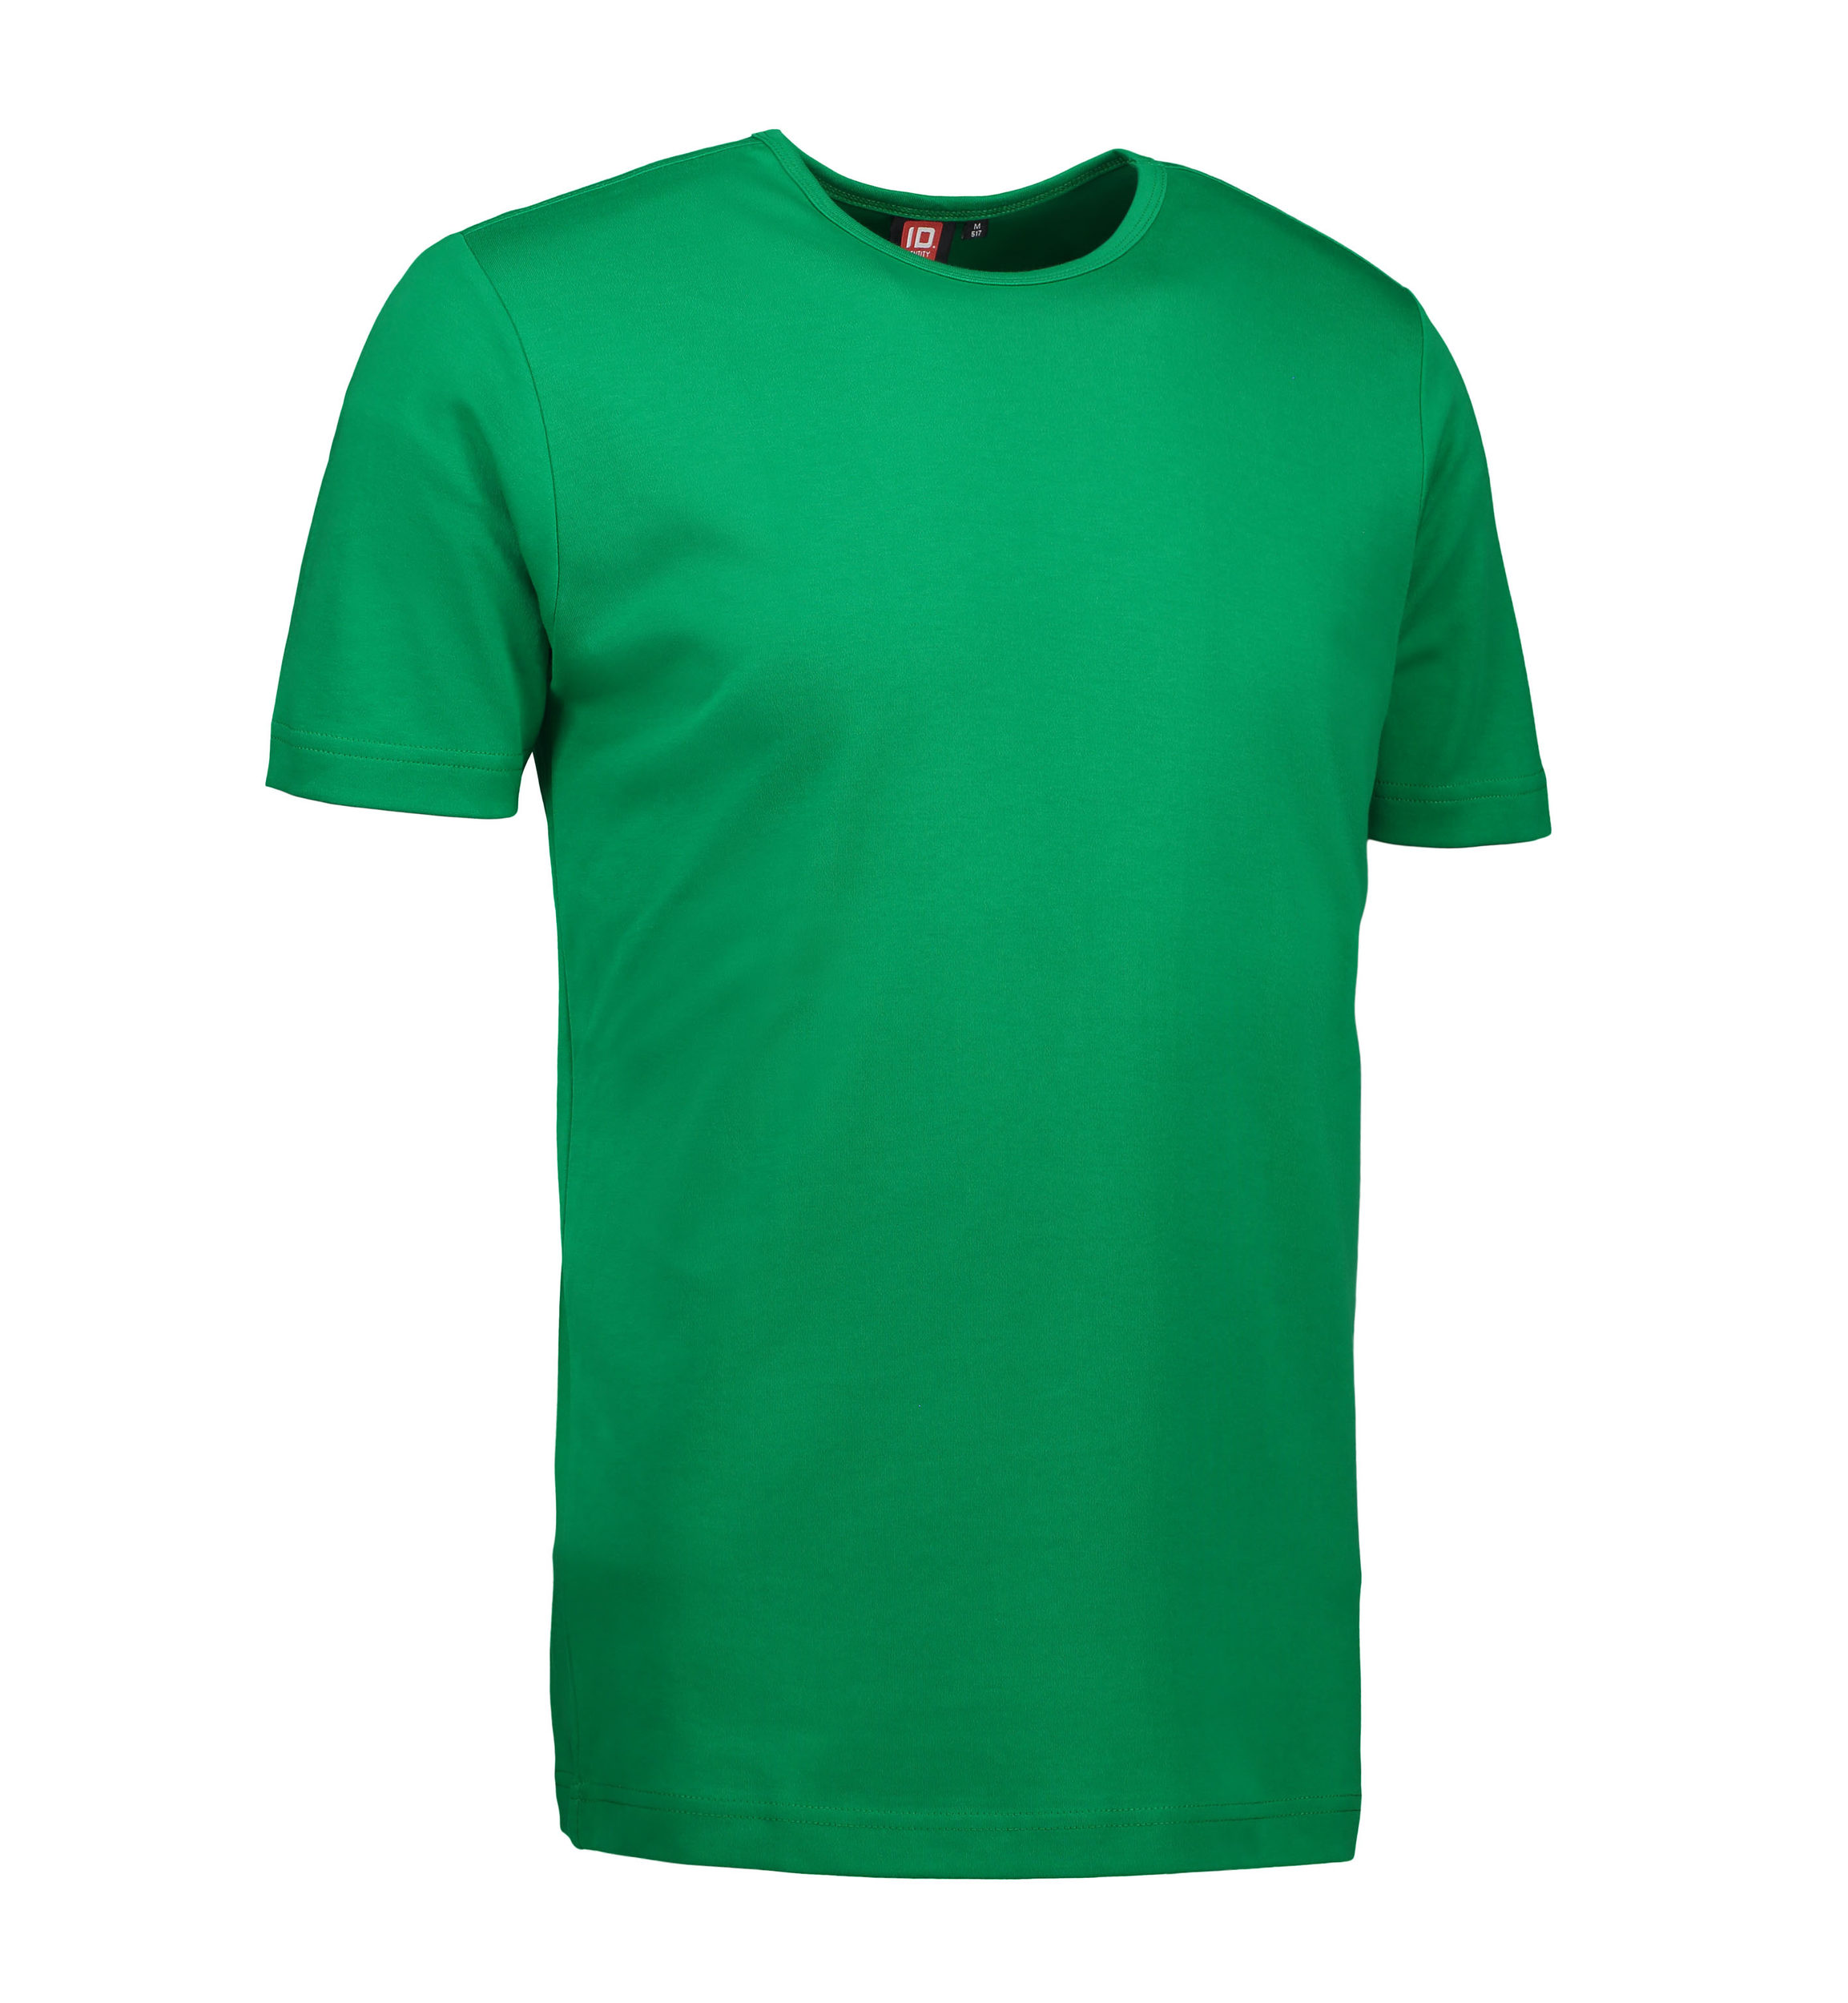 Billede af Grøn t-shirt med rund hals til mænd - M hos Sygeplejebutikken.dk